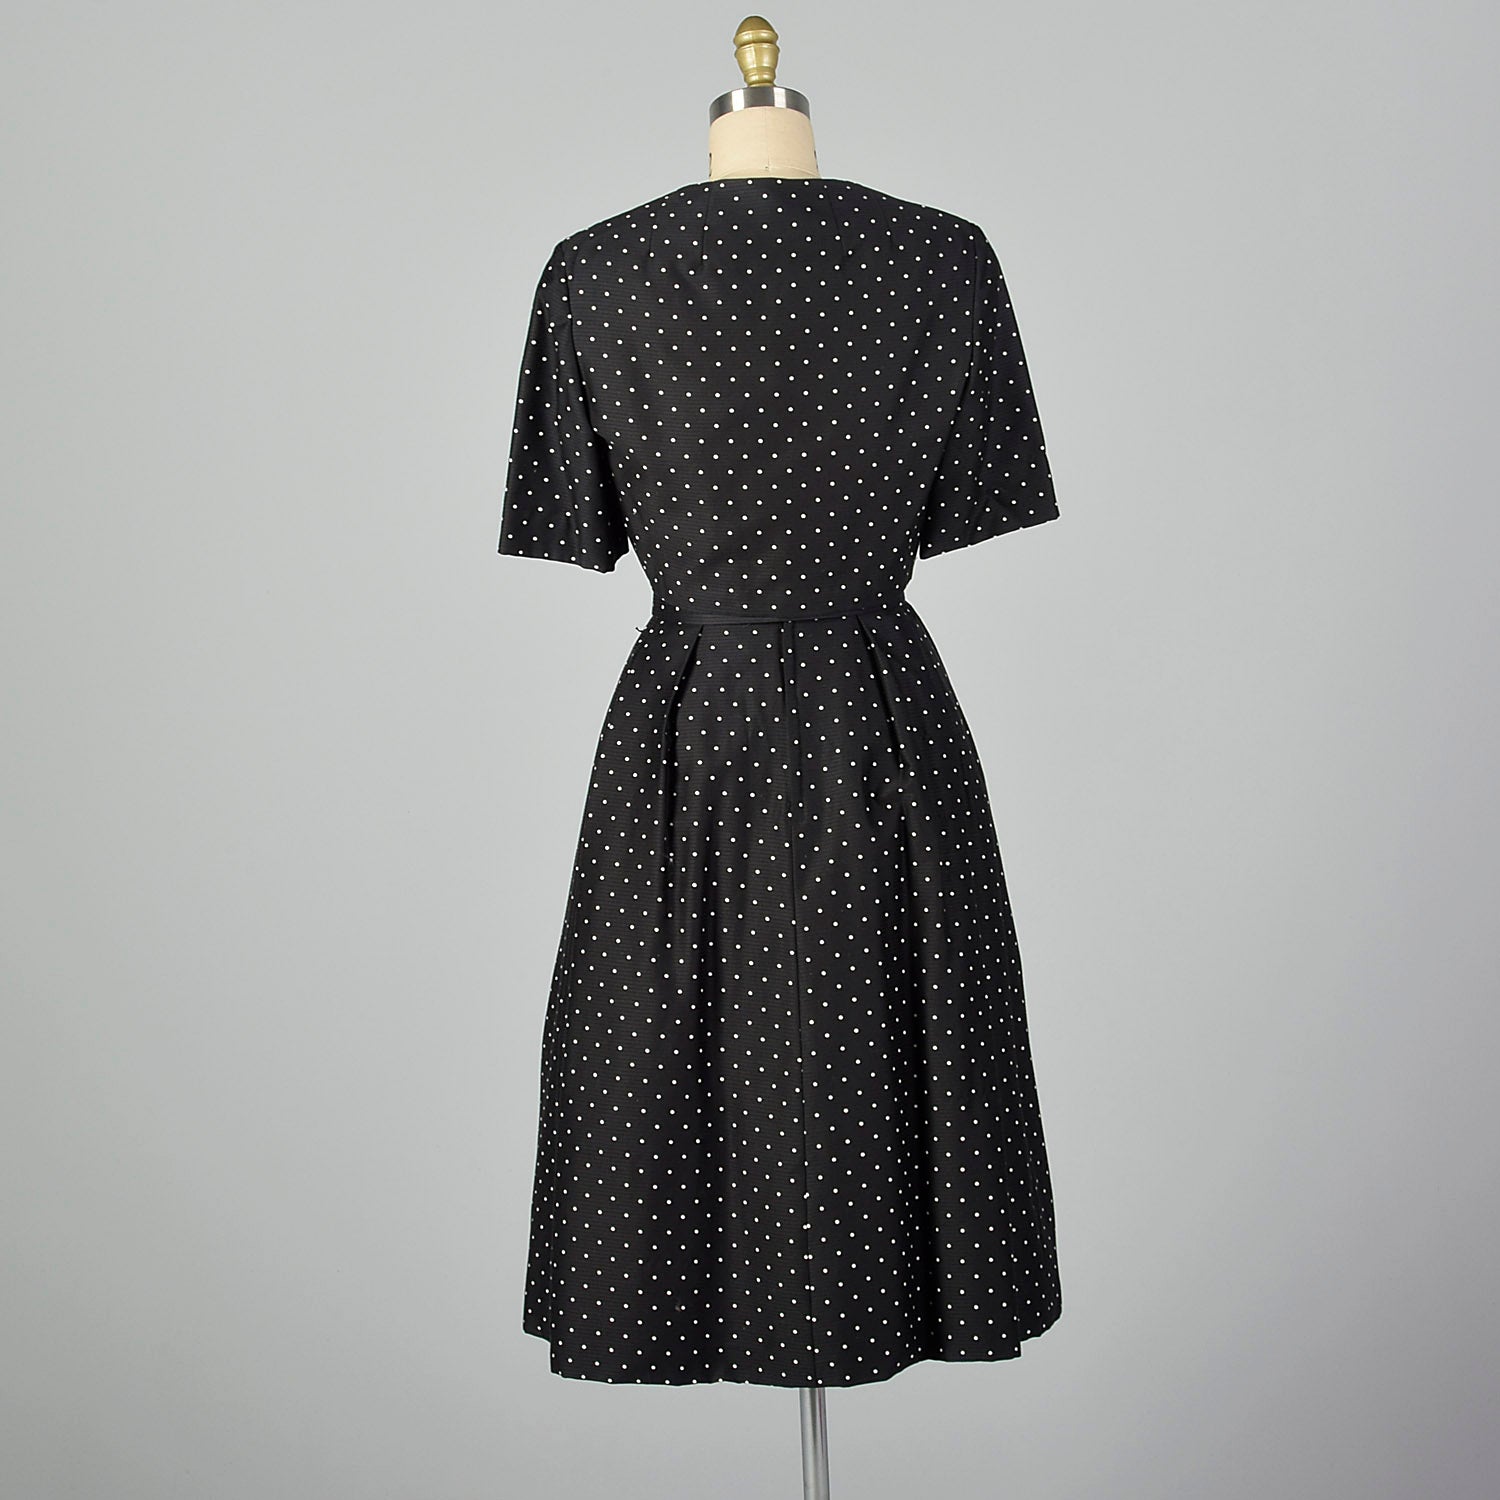 XXS 1950s Adele Simpson Black and White Polka Dot Dress